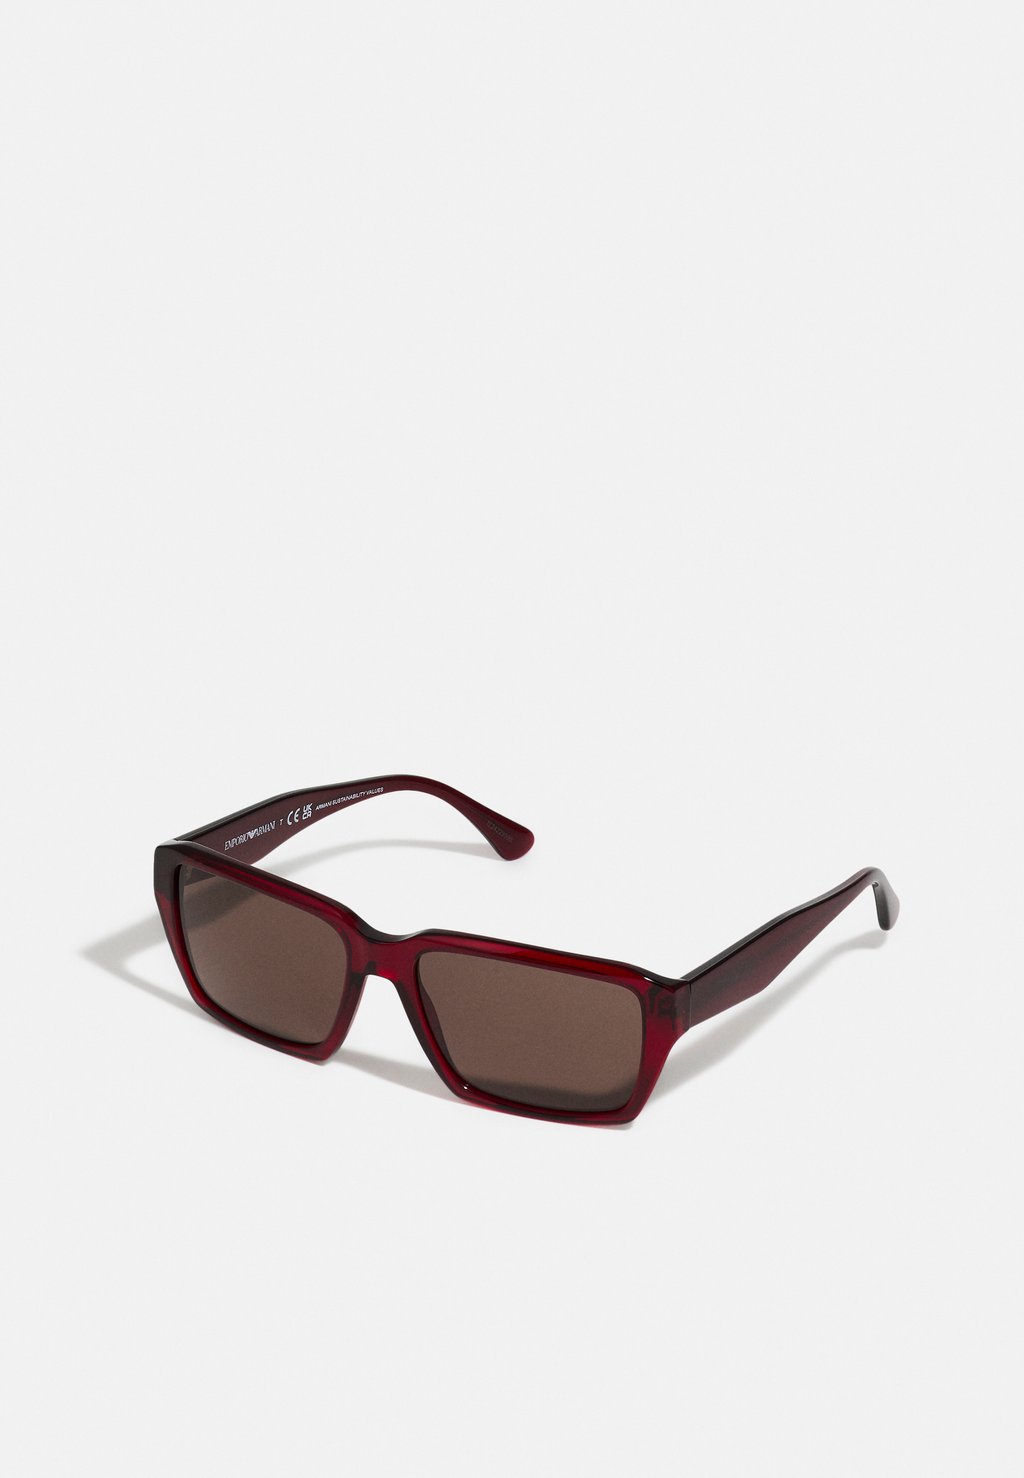 Солнцезащитные очки Emporio Armani, цвет shiny transparent red/dark brown